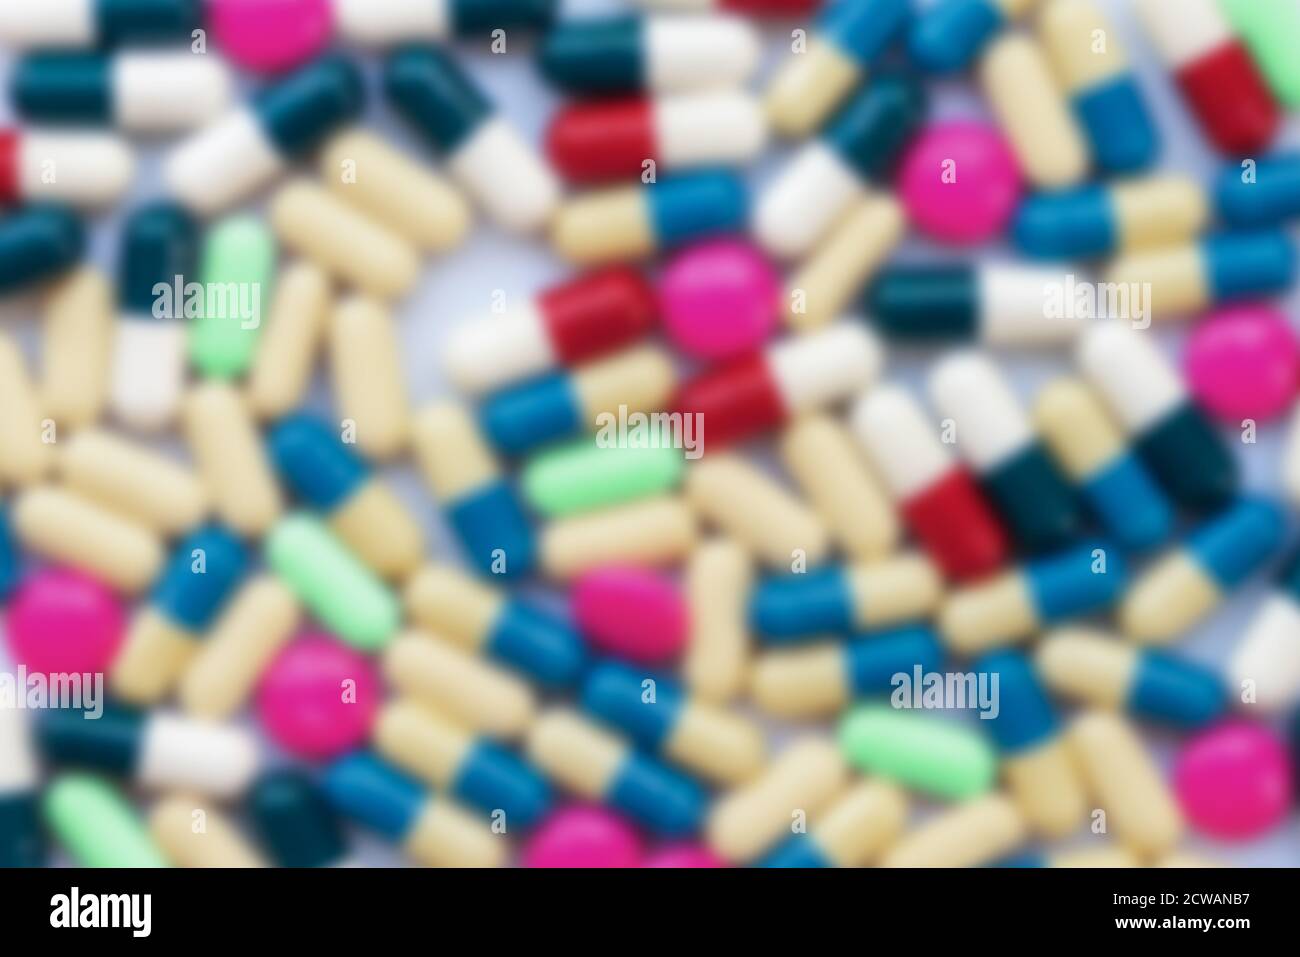 Sfondo di pillole colorate offuscate, salute e farmaci, tossicodipendenza, concetto di industria farmaceutica Foto Stock